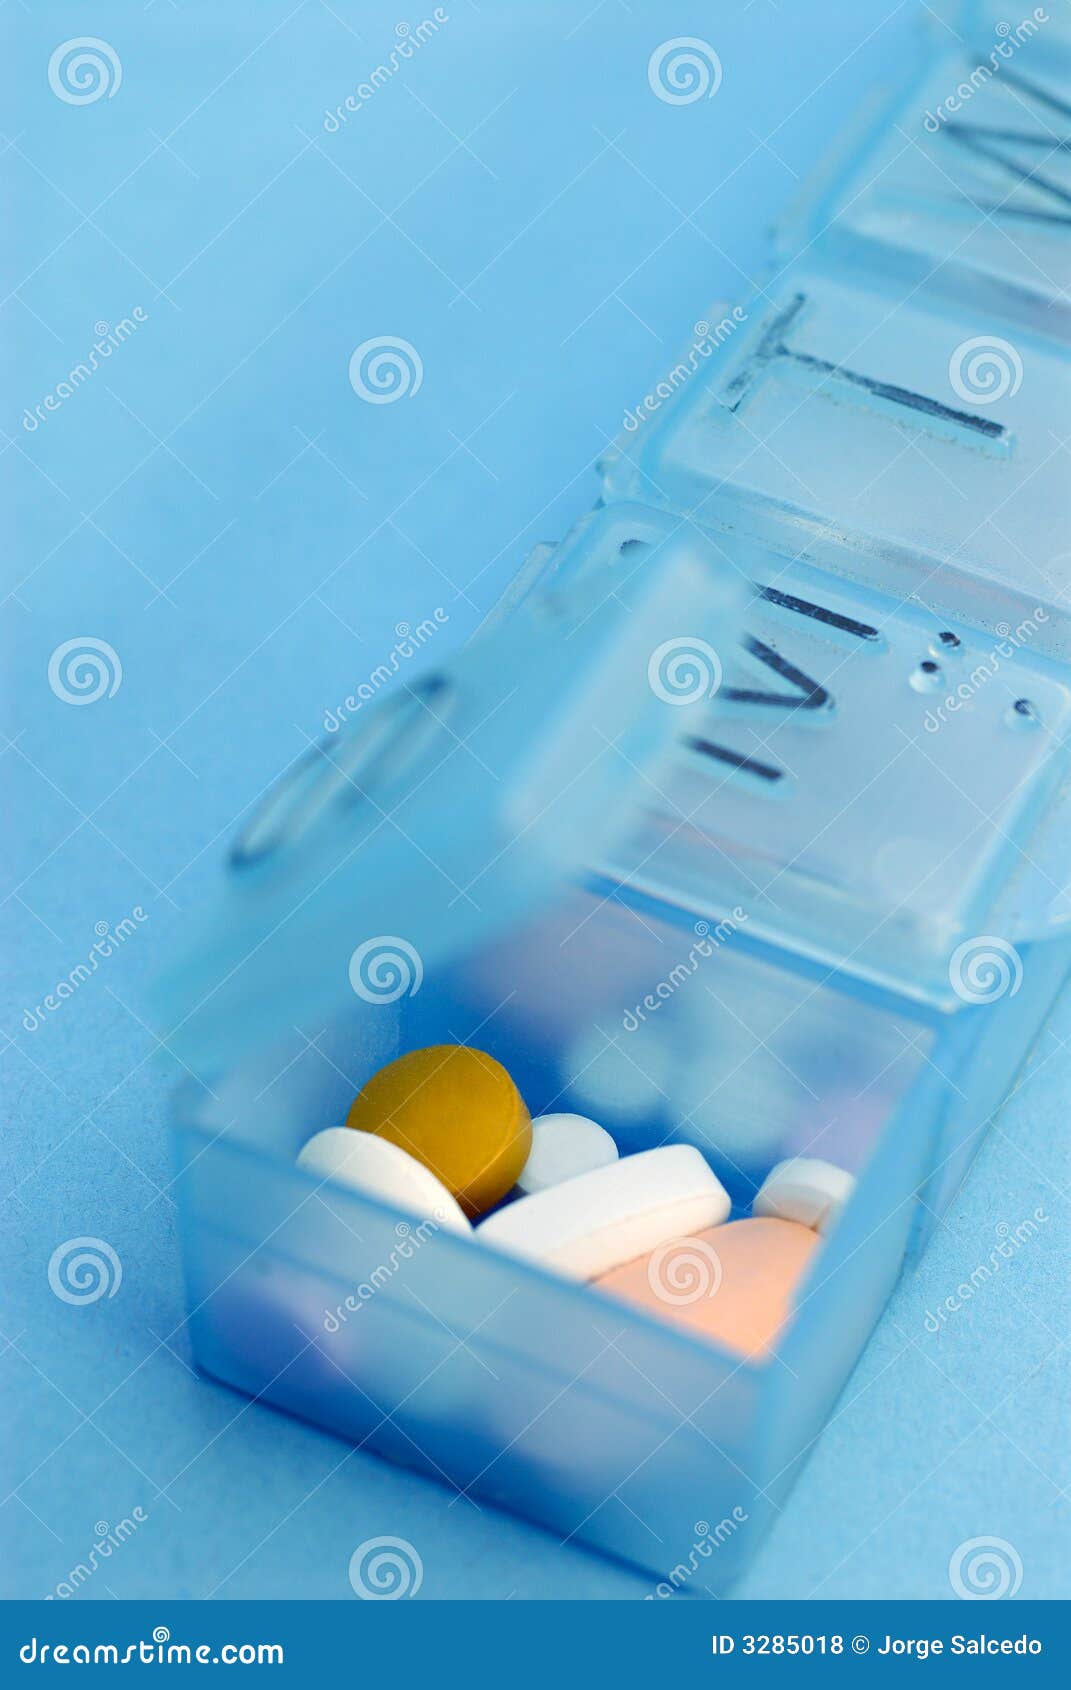 prescription drugs in pill box